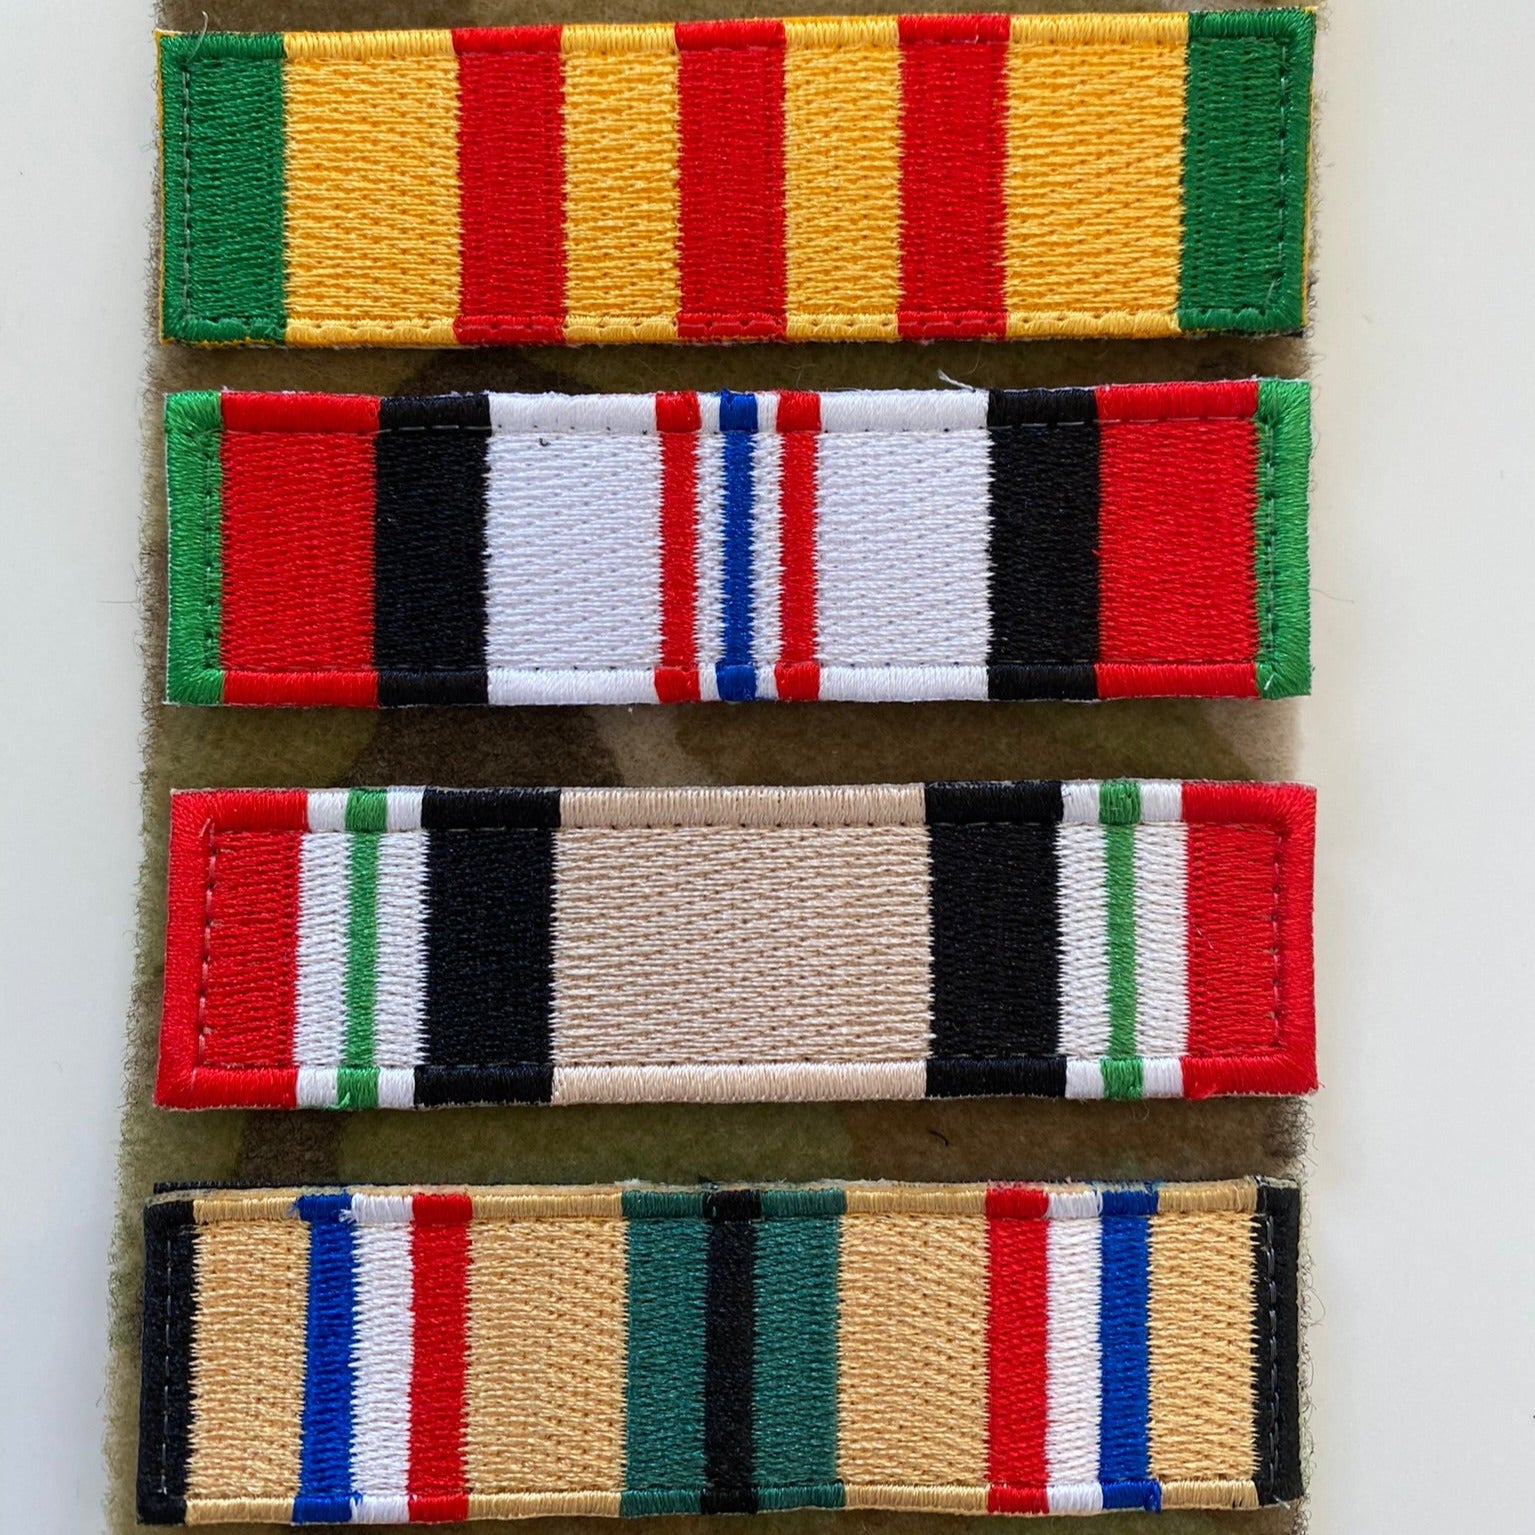 Vietnam Service Ribbon Morale Patch